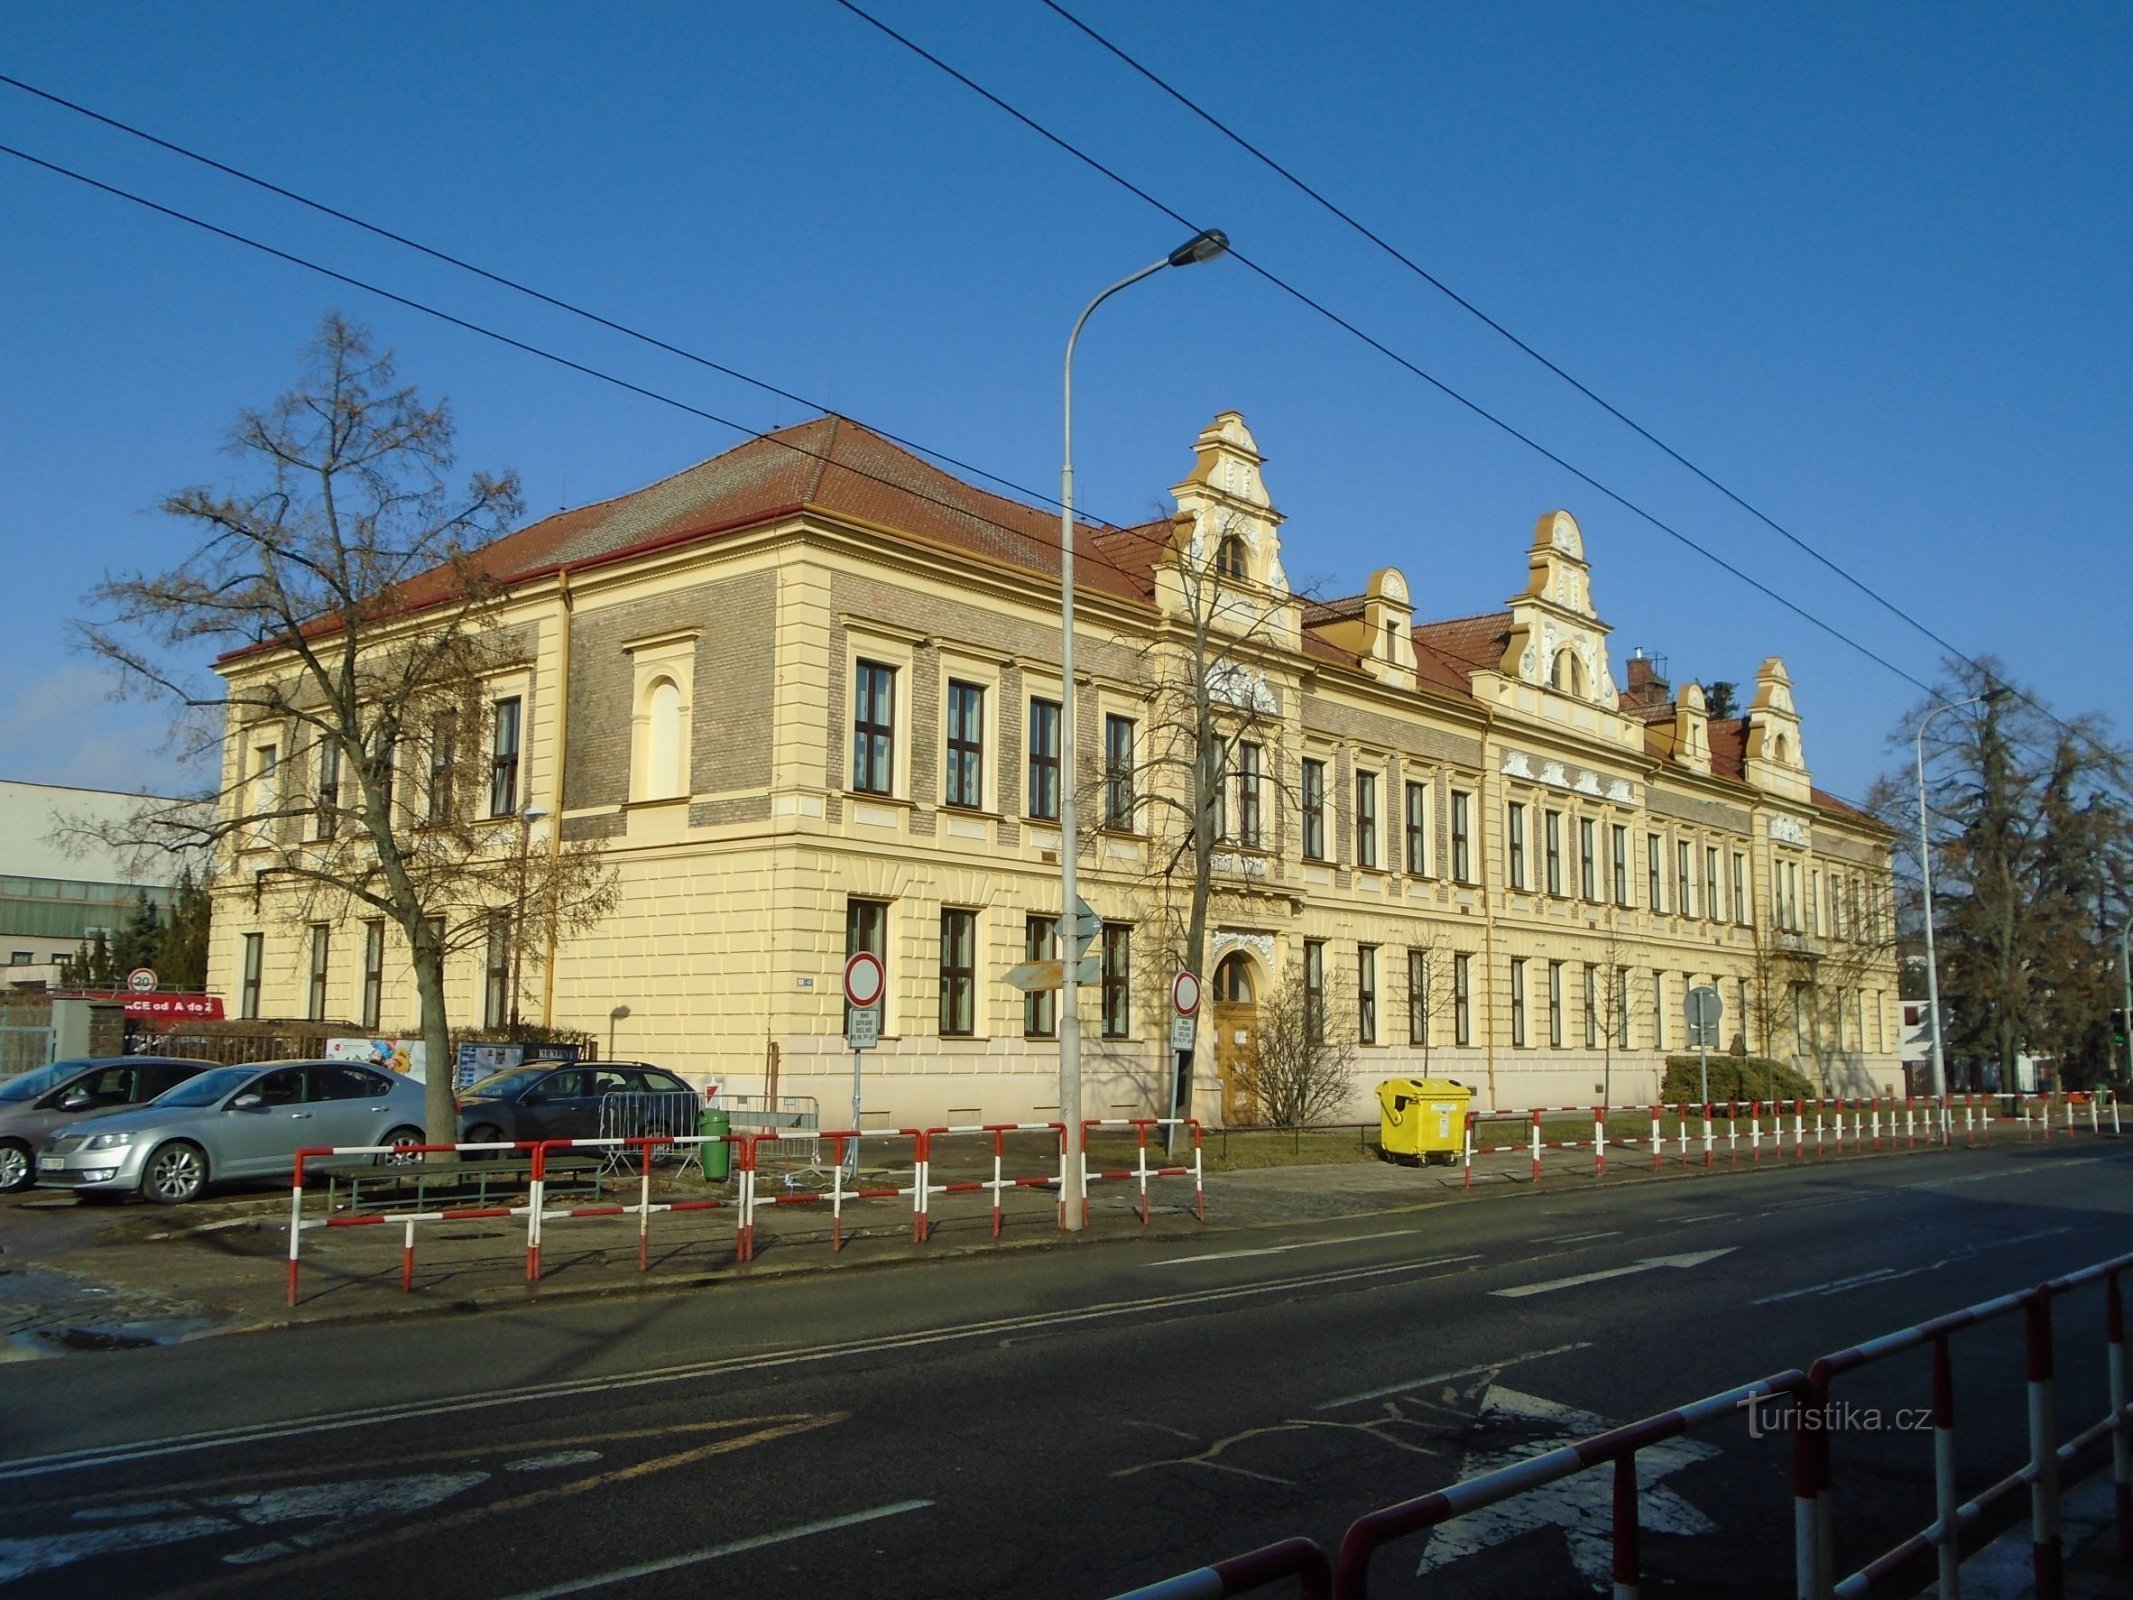 A kuklenyi általános iskola jelenlegi megjelenése (Hradec Králové, 8.2.2019. február XNUMX.)